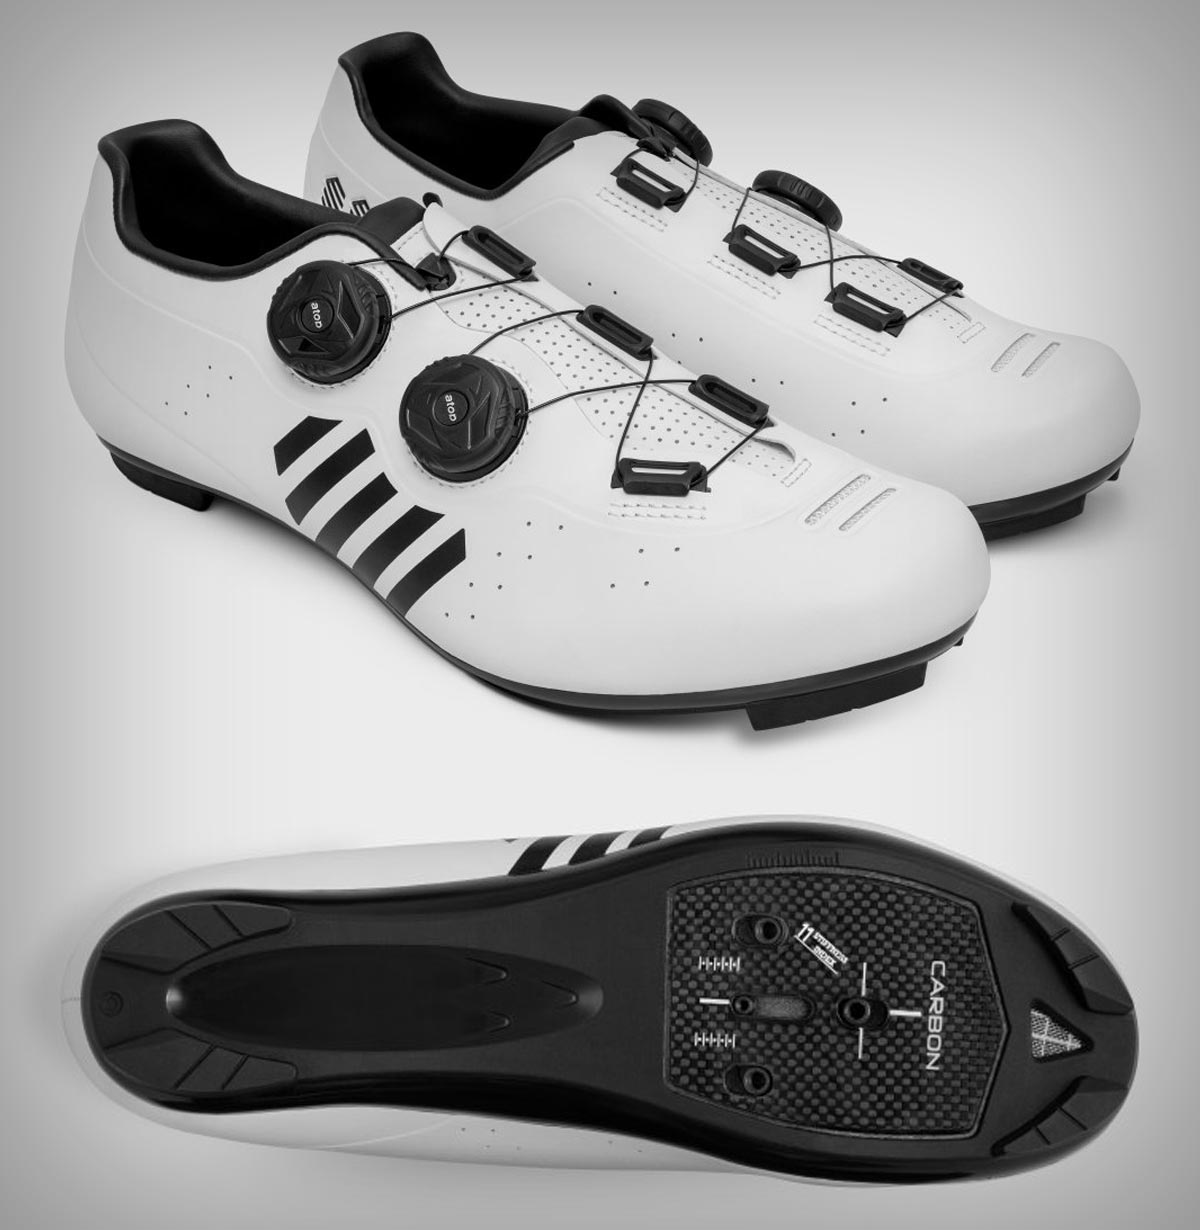 Siroko amplía su gama de ciclismo con las zapatillas Revolve e Infinity para carretera